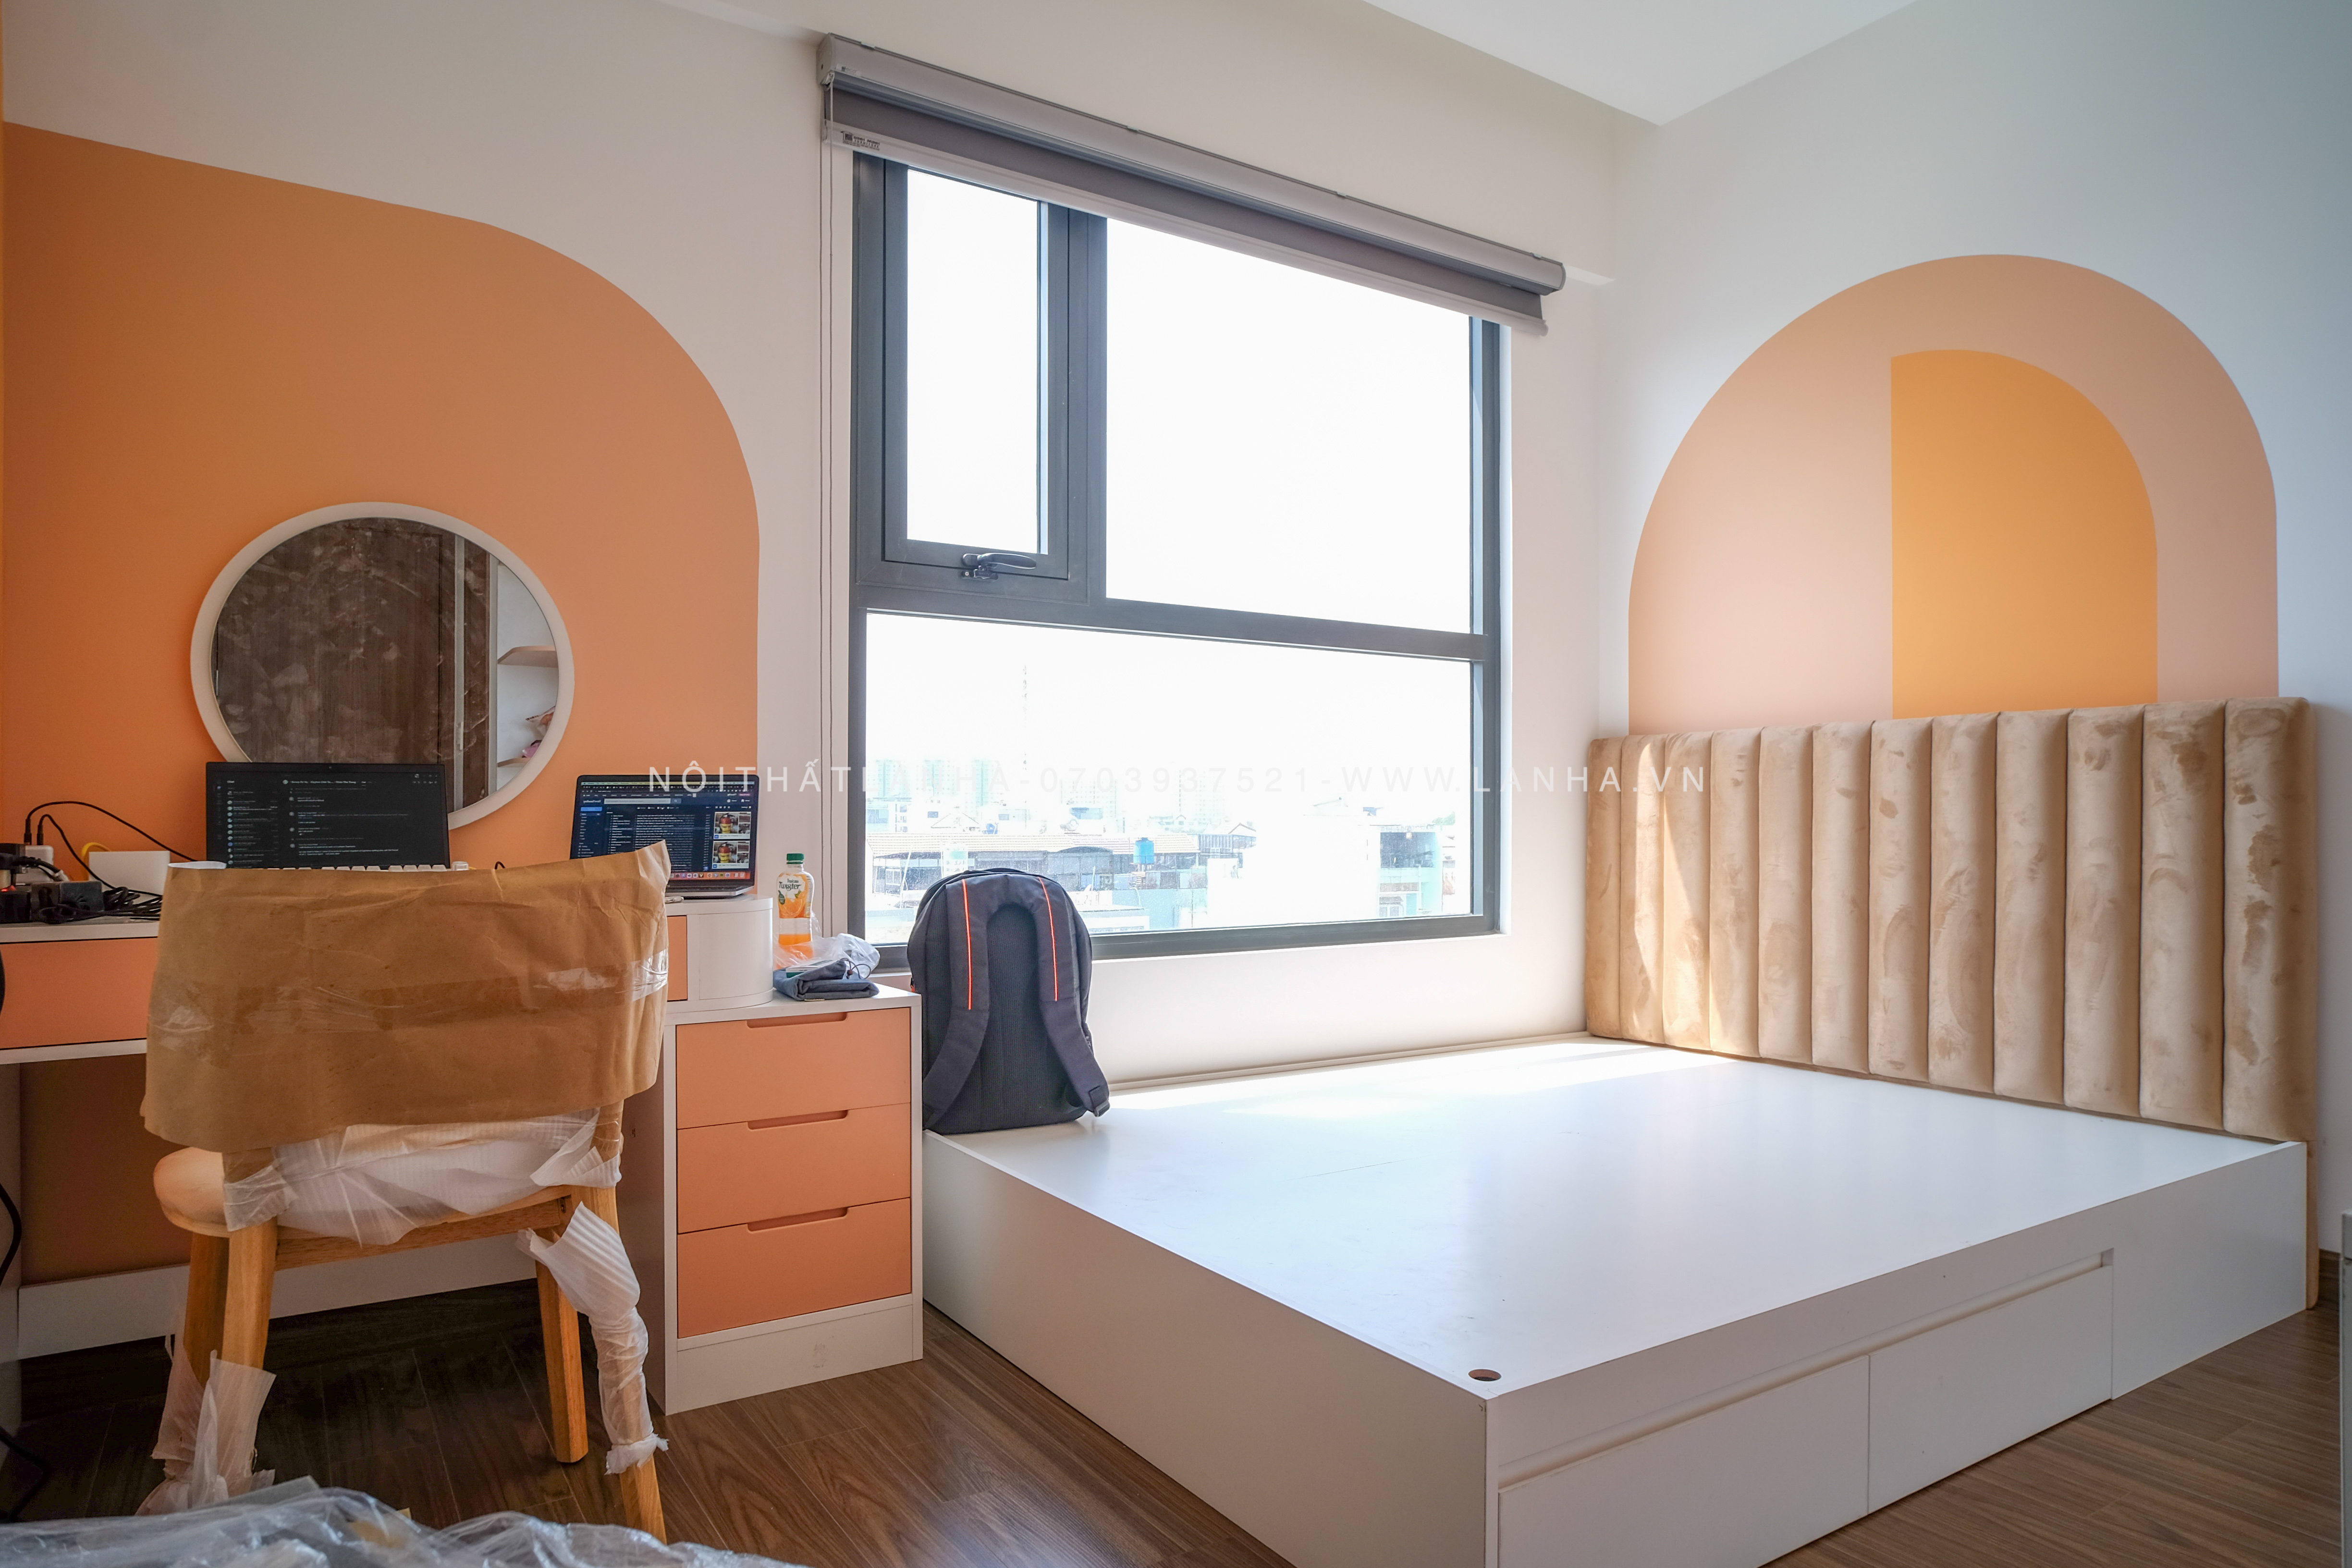 Phong cách Scandinavian tối giản các chi tiết nội thất cùng những nhấn nhá màu sắc làm cho căn phòng nổi bật